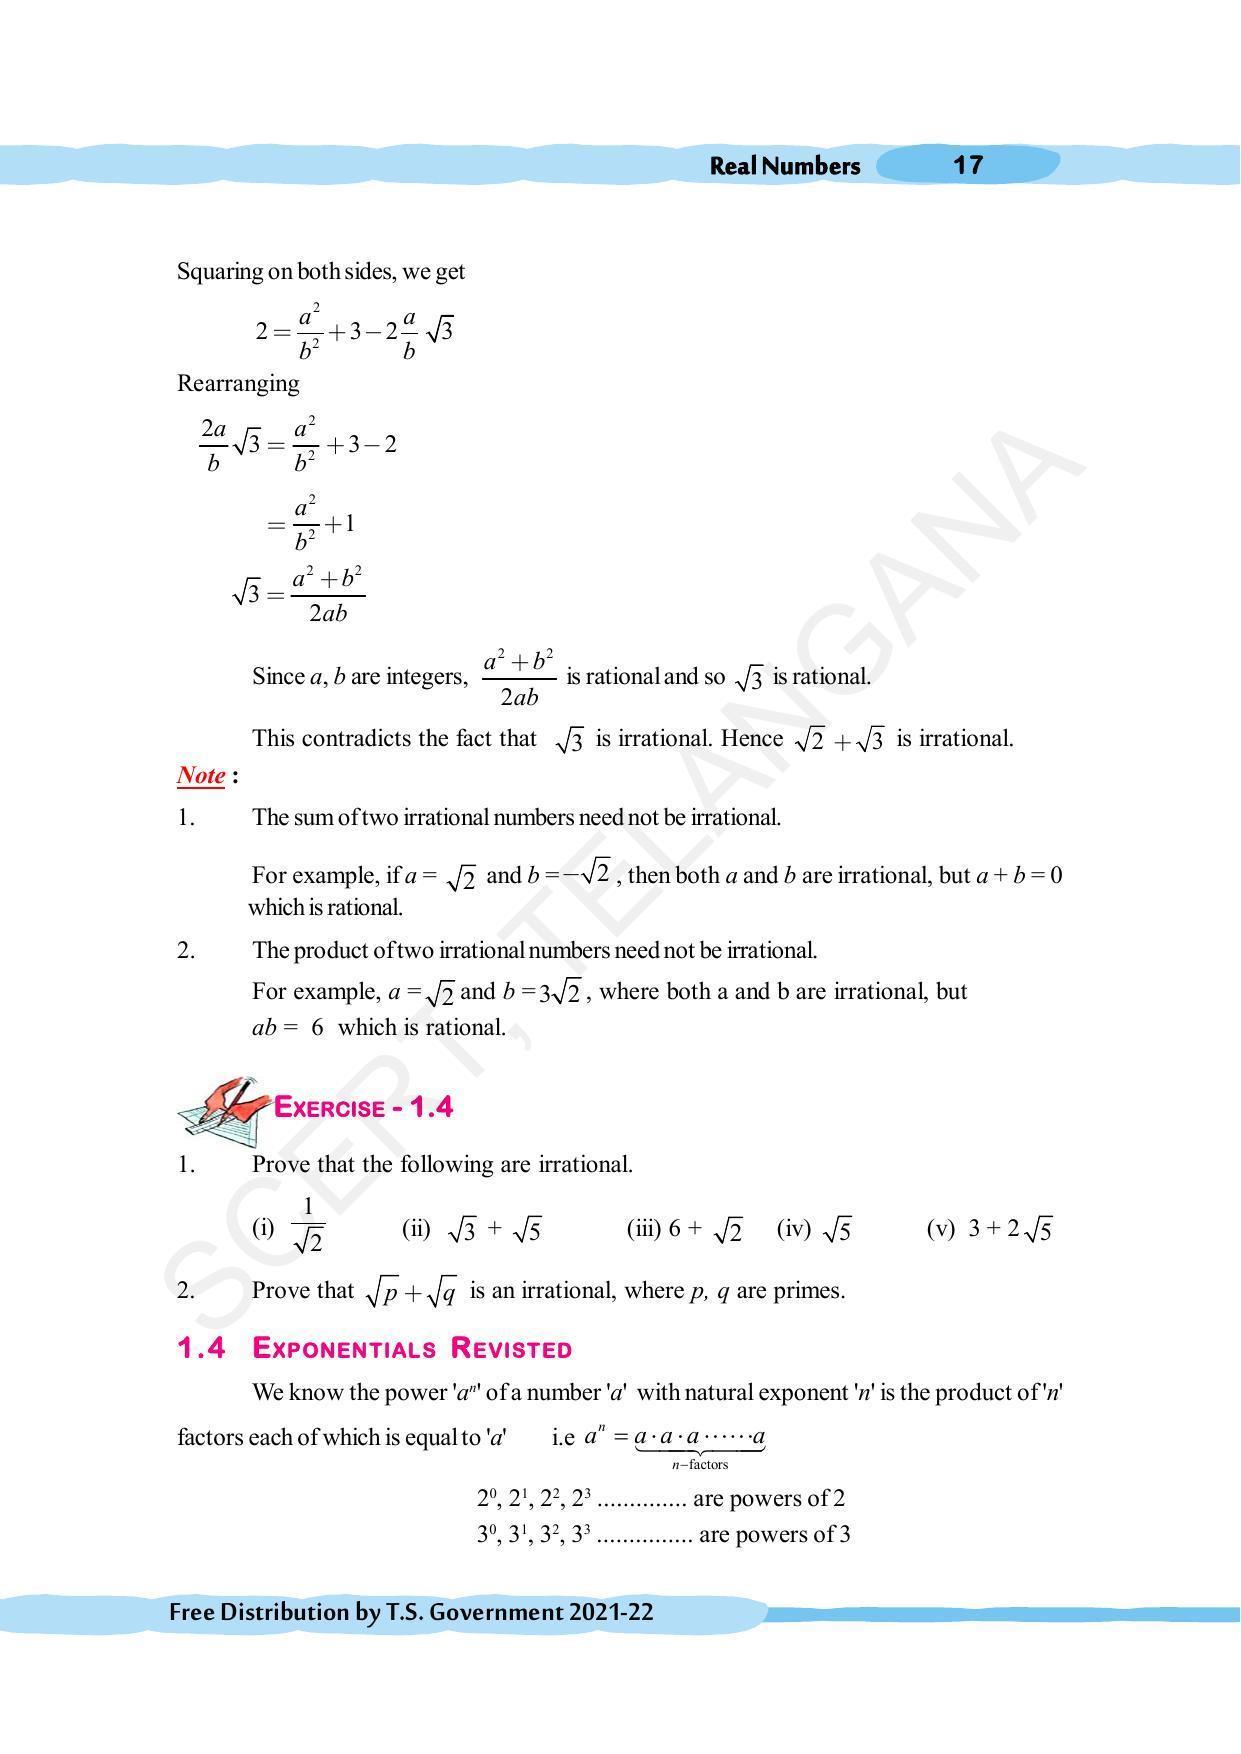 TS SCERT Class 10 Maths (English Medium) Text Book - Page 27